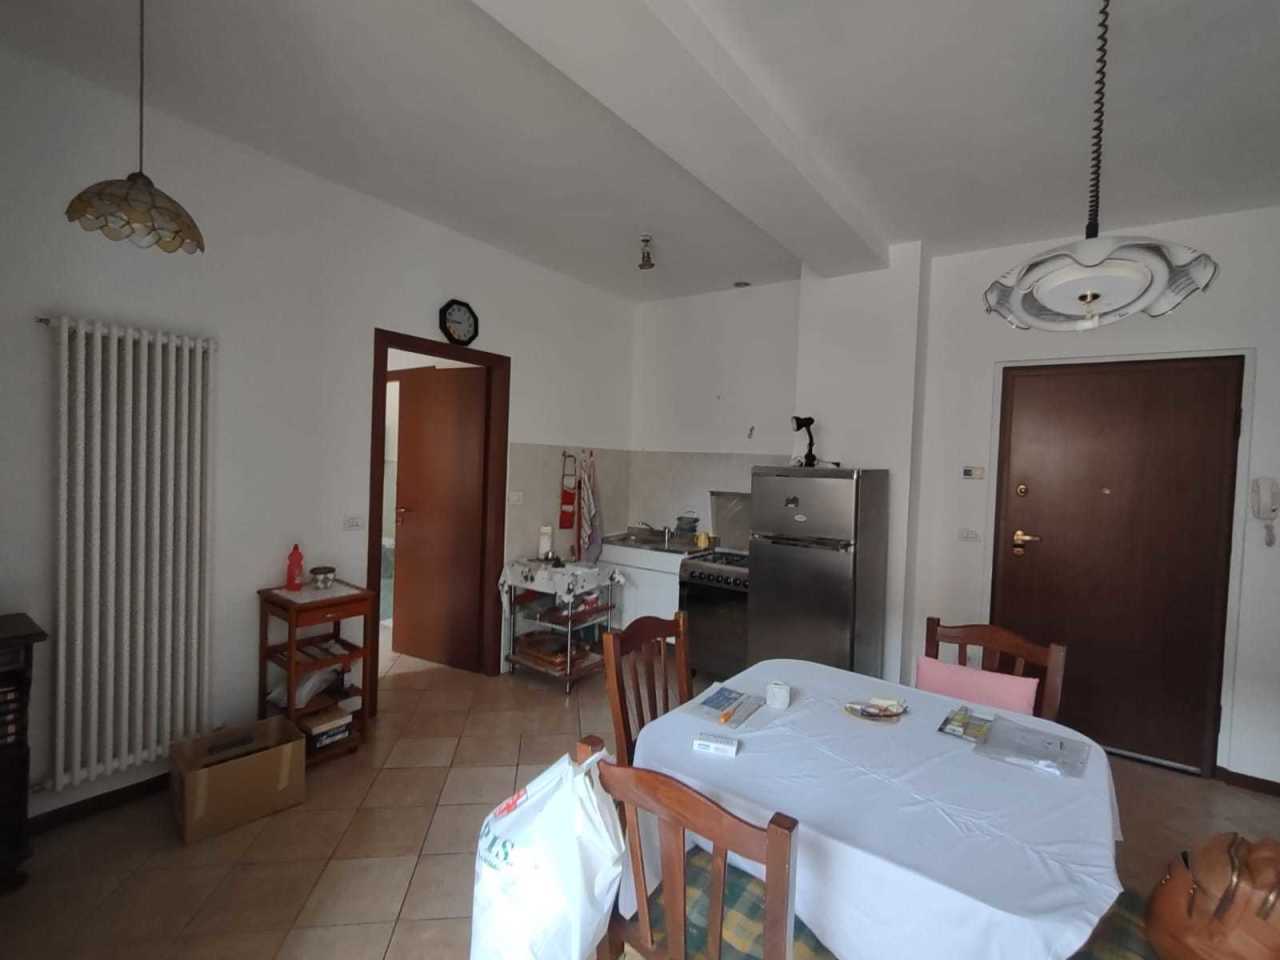 Appartamento in vendita a Jesi, 2 locali, prezzo € 50.000 | PortaleAgenzieImmobiliari.it